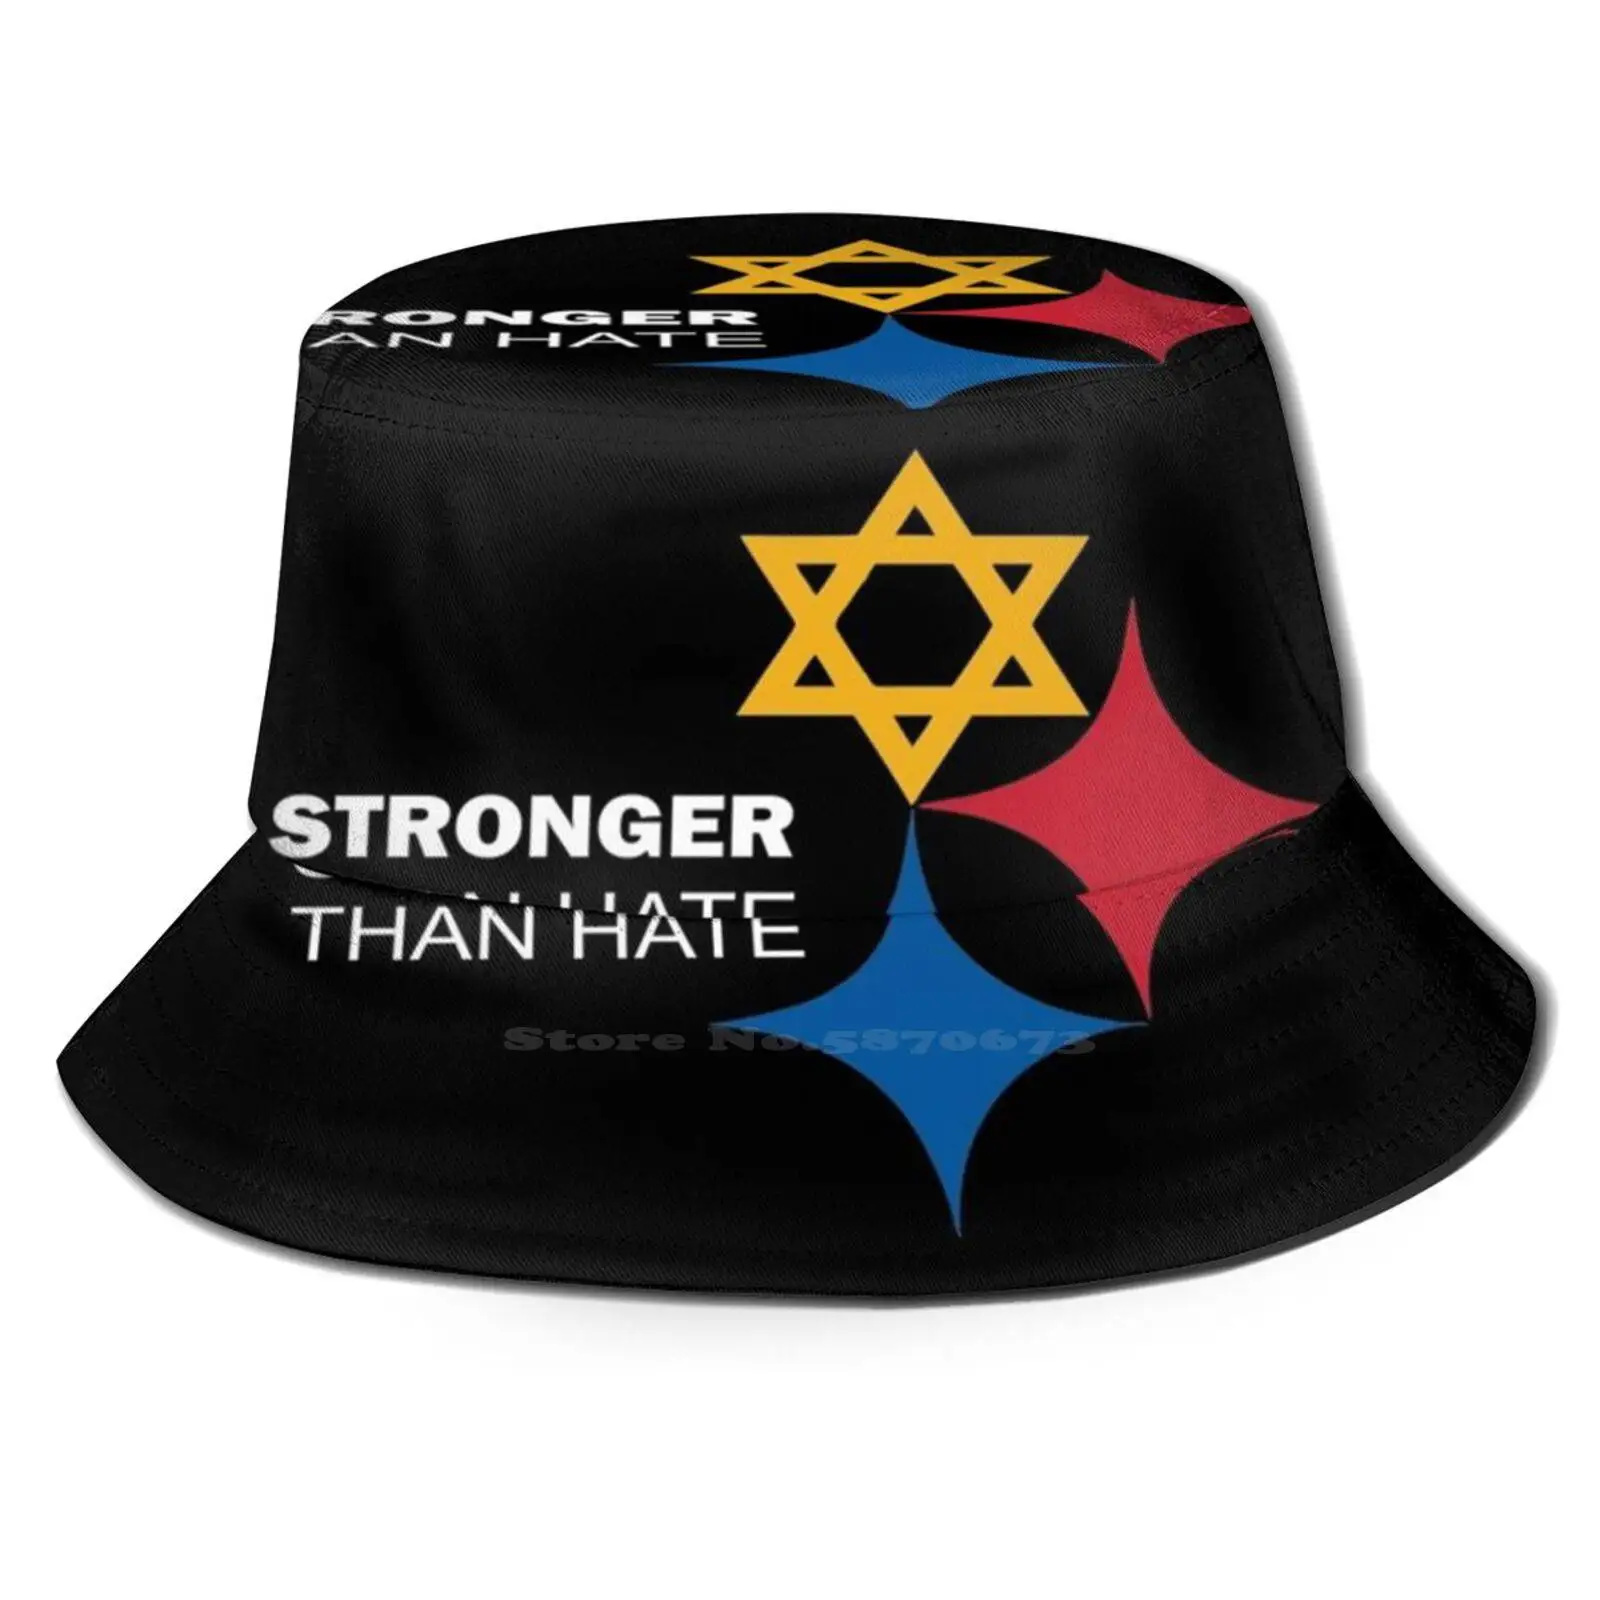 

Продажа черной пятницы-Питтсбург сильнее, чем ненавидит, шляпа рыбака унисекс, кепка 1980 8 бит, Питтсбург сильная еврейская любовь